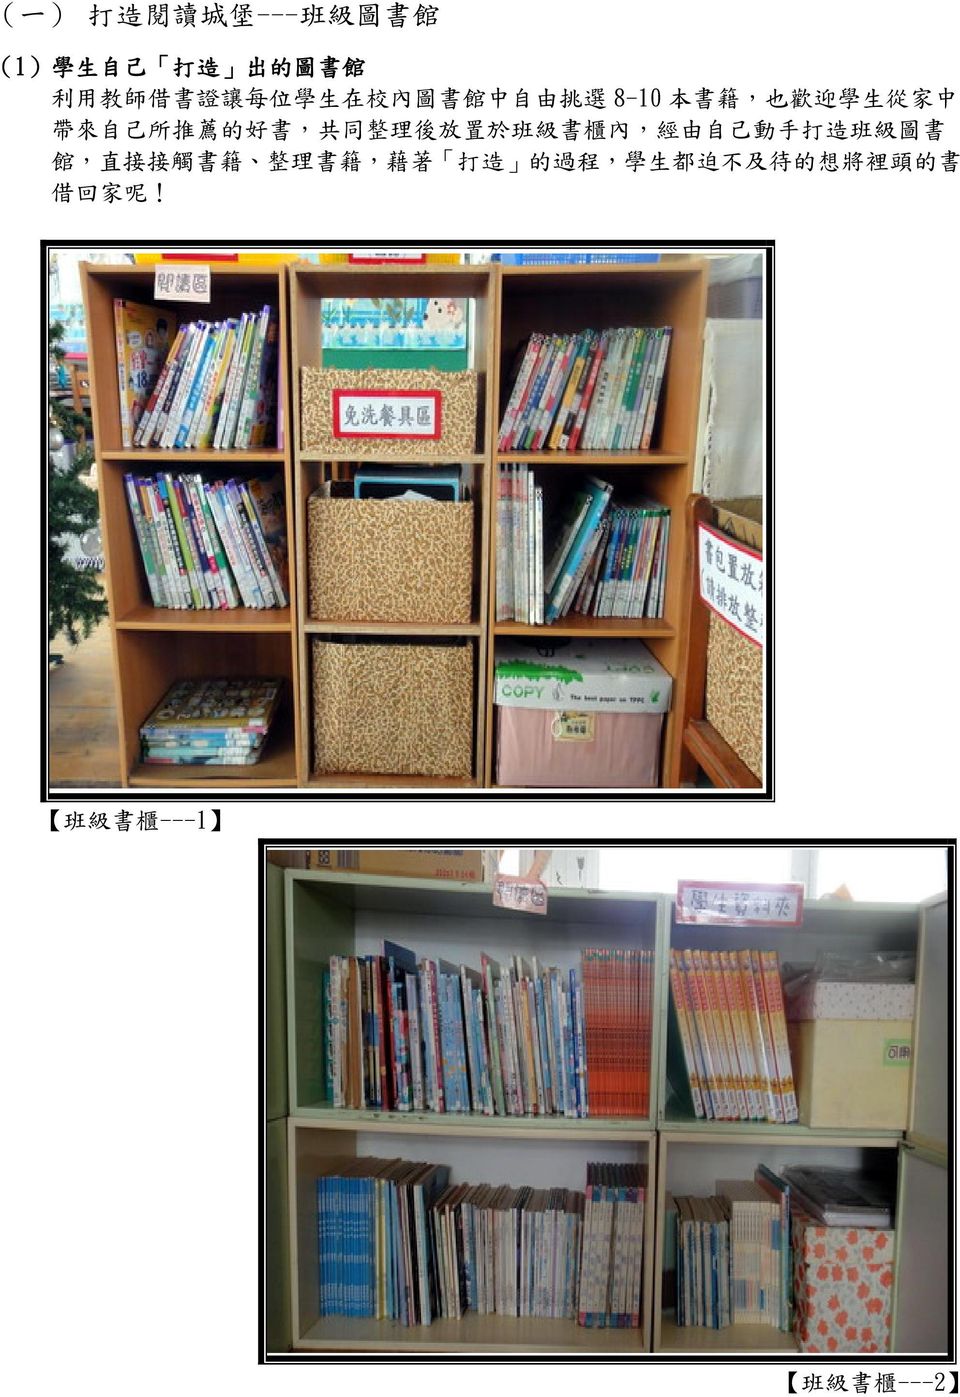 共 同 整 理 後 放 置 於 班 級 書 櫃 內, 經 由 自 己 動 手 打 造 班 級 圖 書 館, 直 接 接 觸 書 籍 整 理 書 籍, 藉